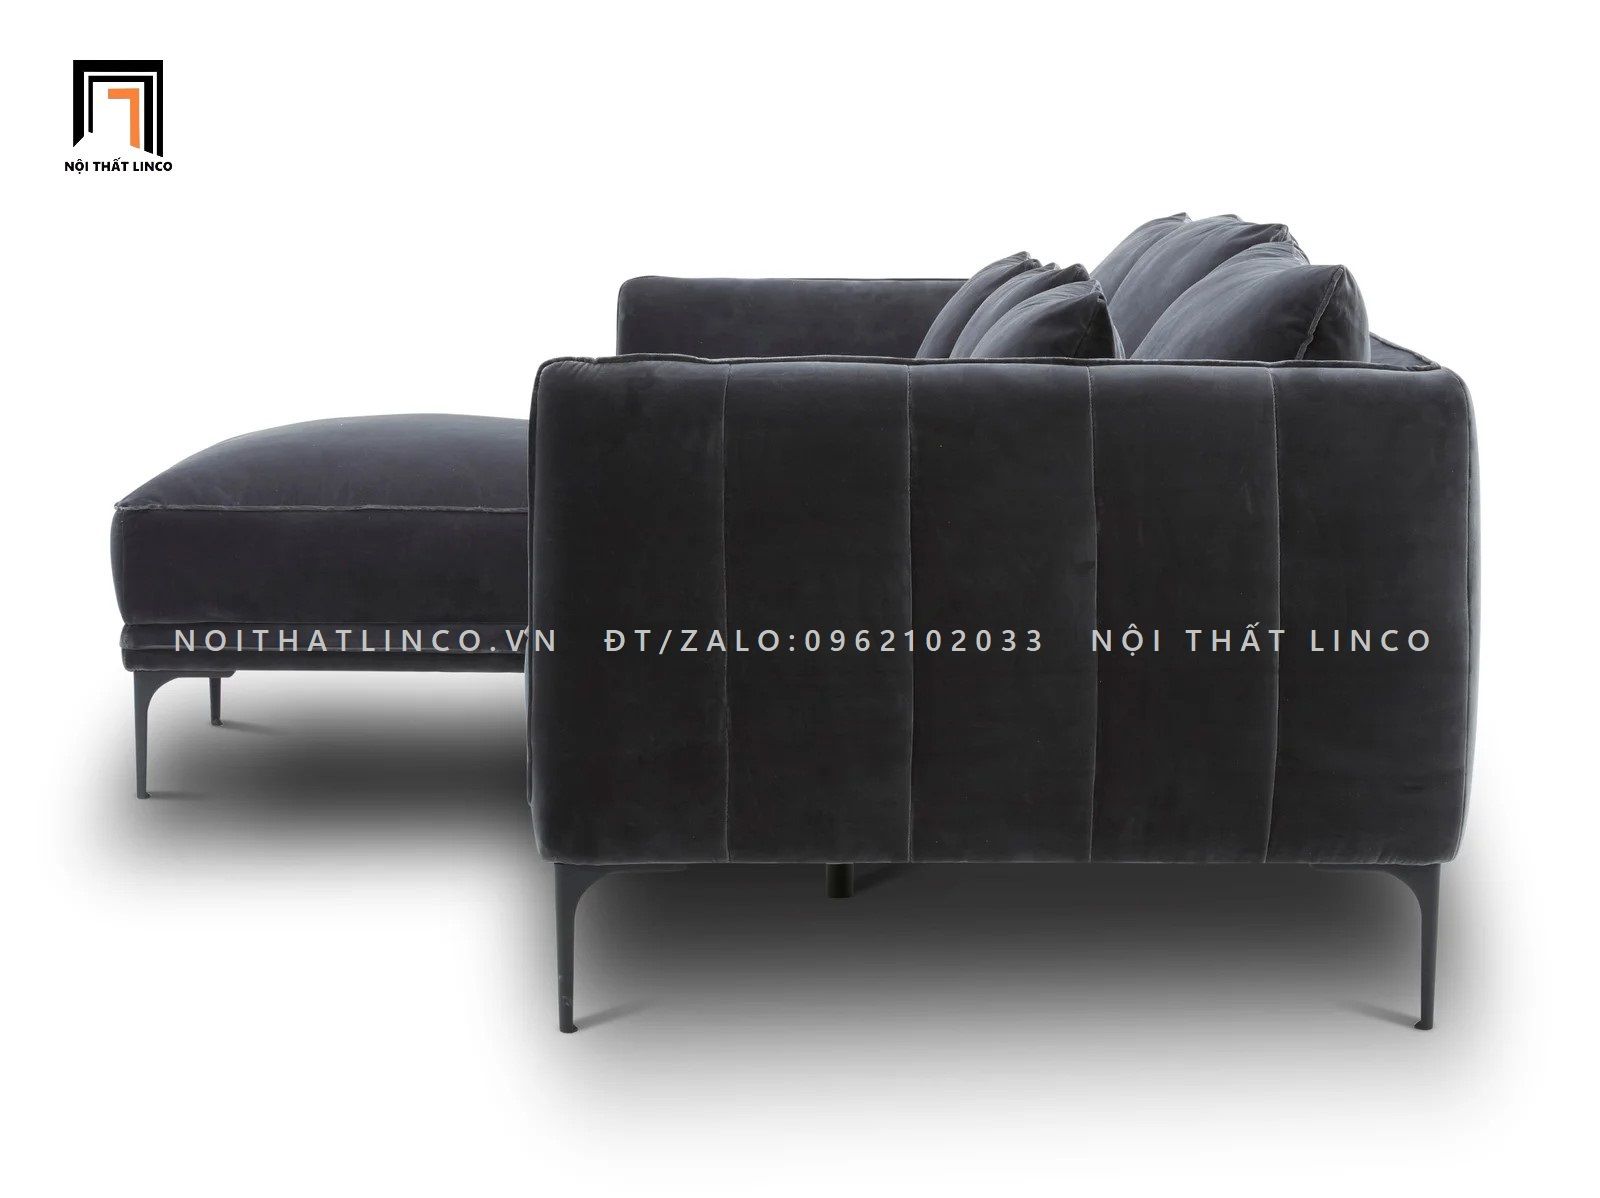  Ghế sofa góc L GT73 Orchad 2m2 x 1m6 vải nhung nỉ 